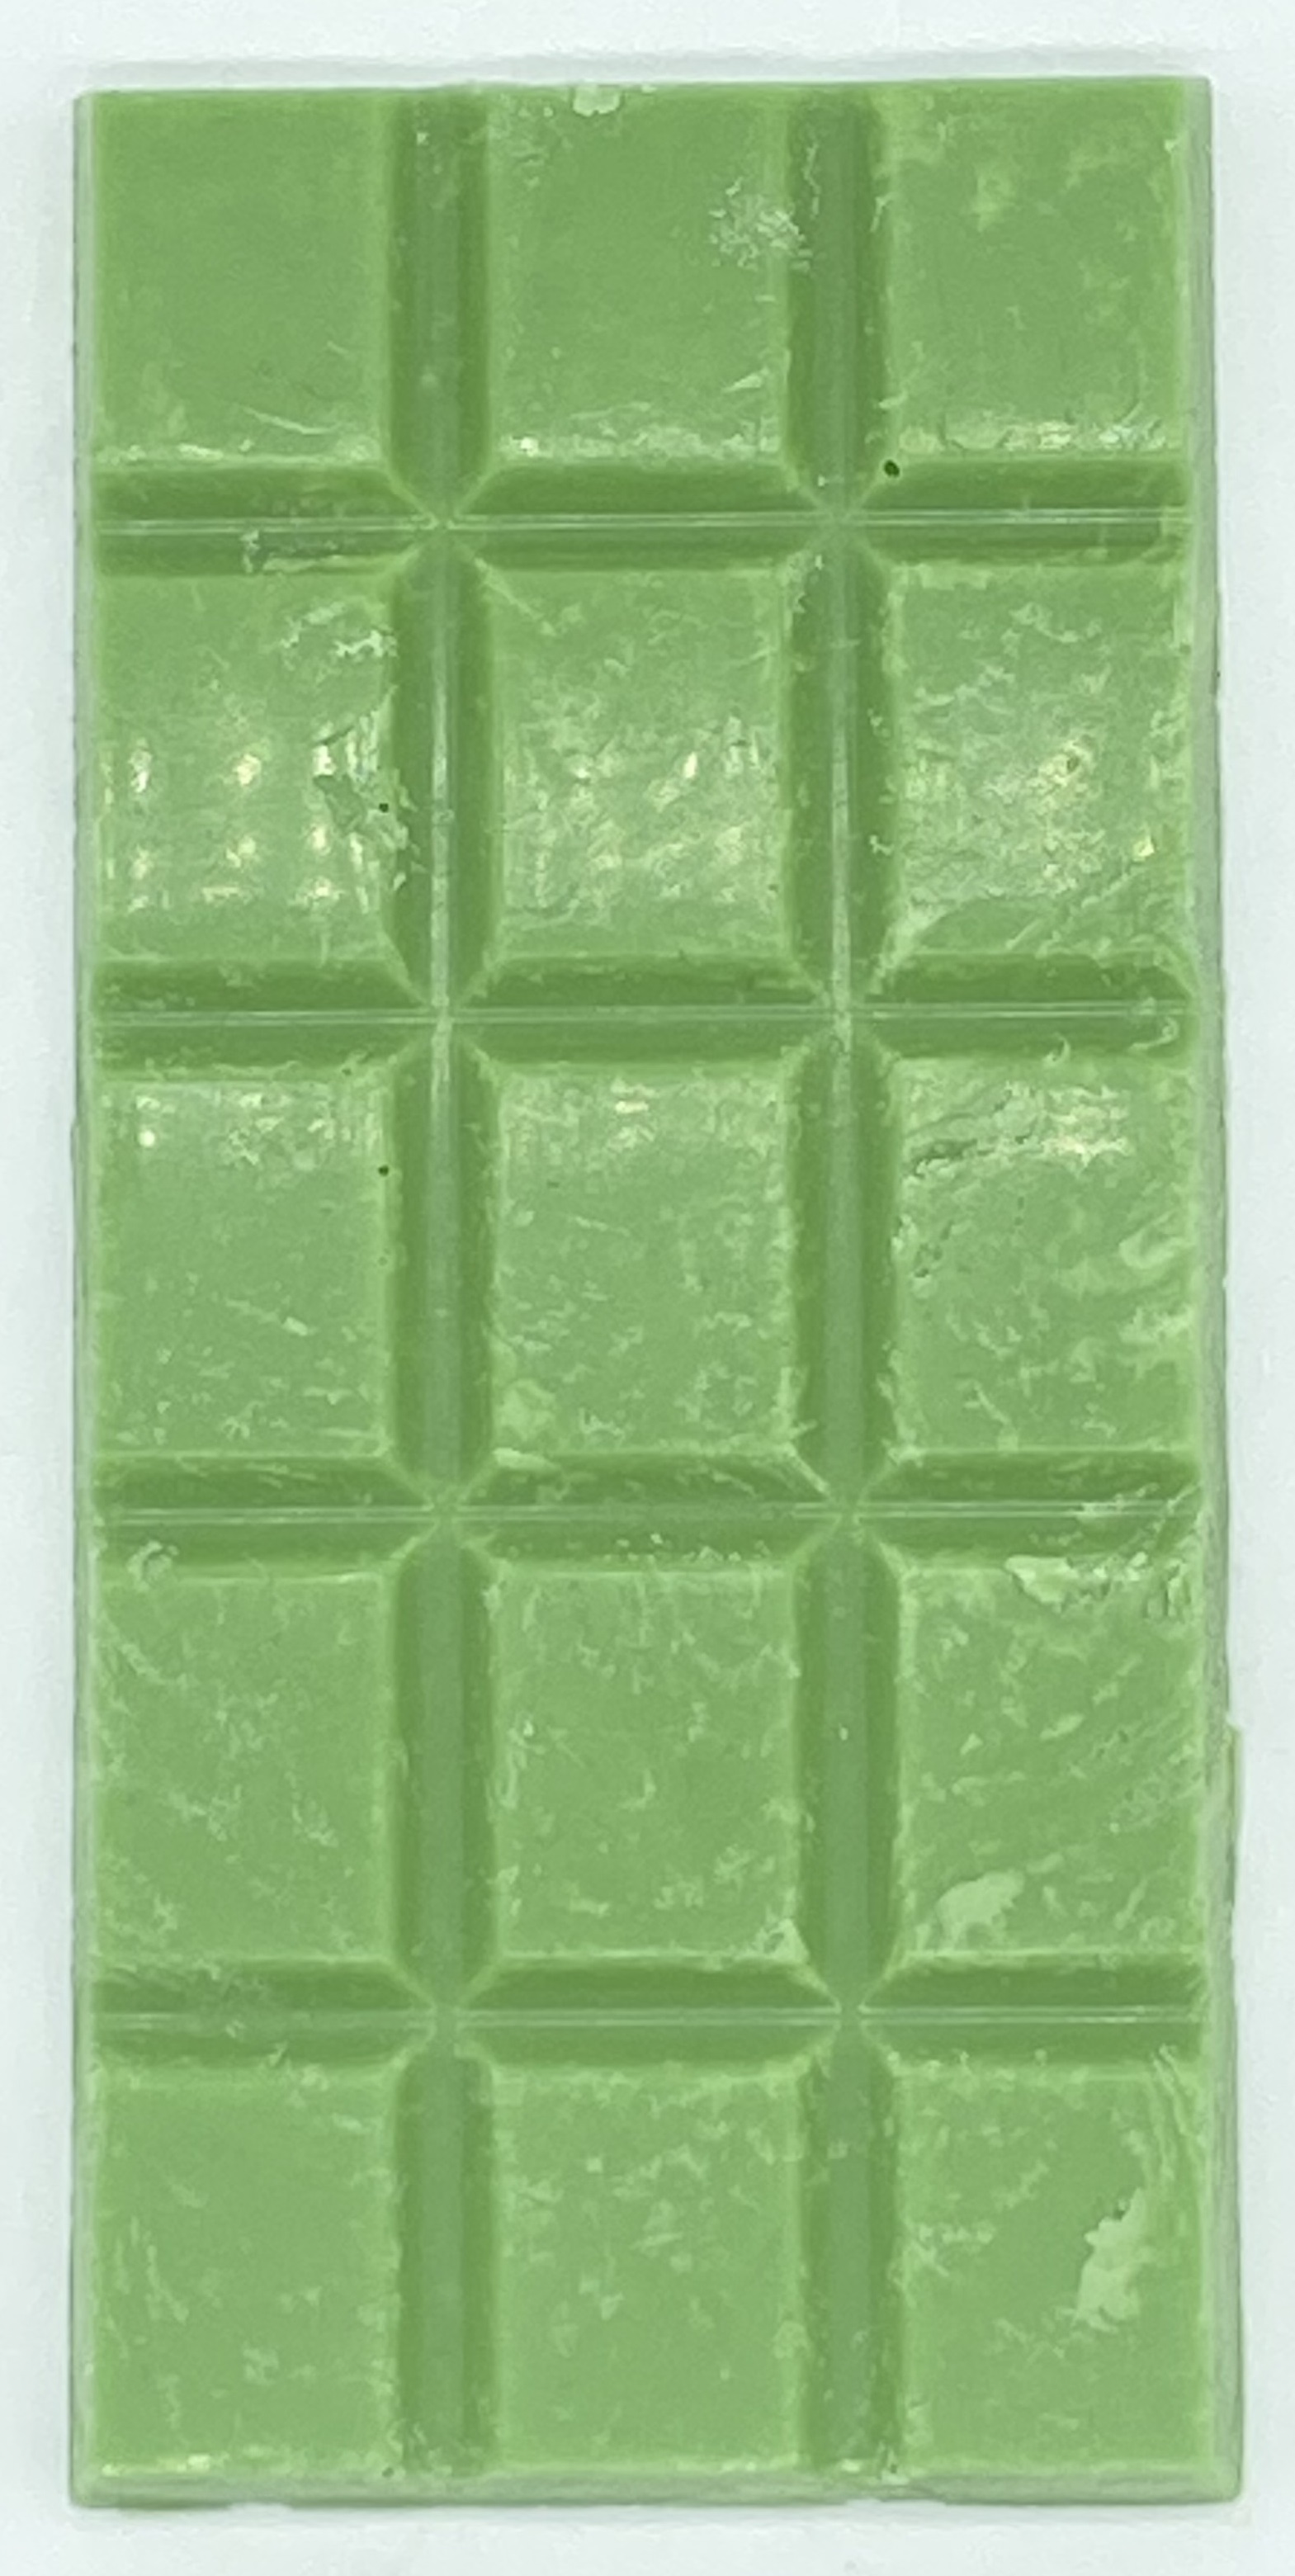 copper chlorophyll green chocolate bar